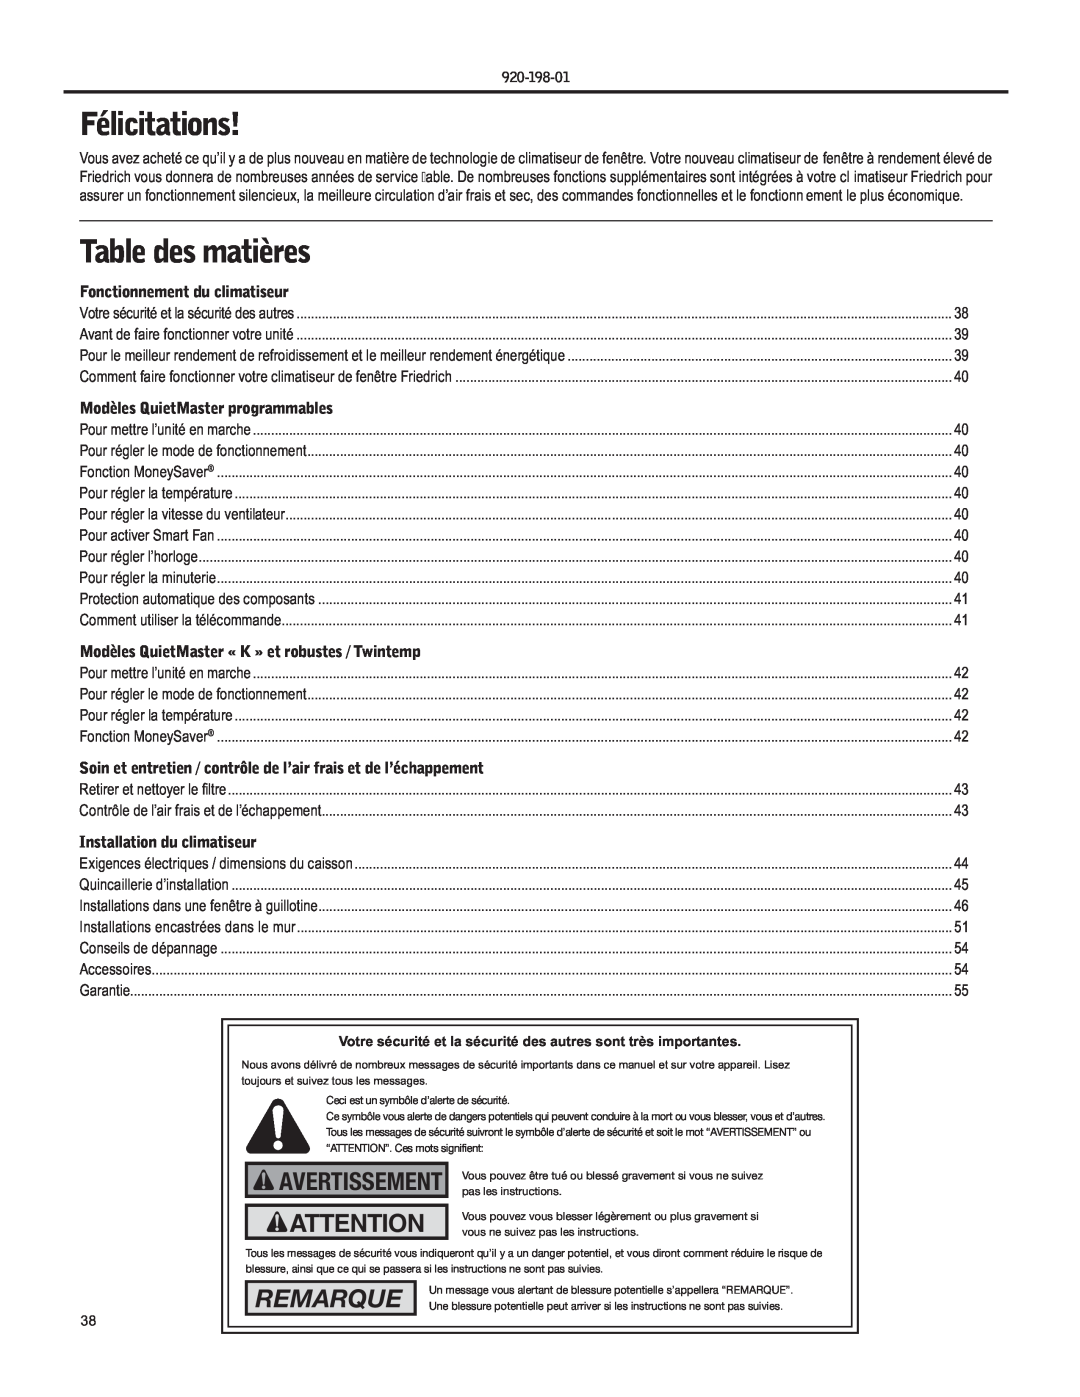 Friedrich YS09 operation manual Félicitations, Table des matières, Remarque, Avertissement, Fonctionnement du climatiseur 